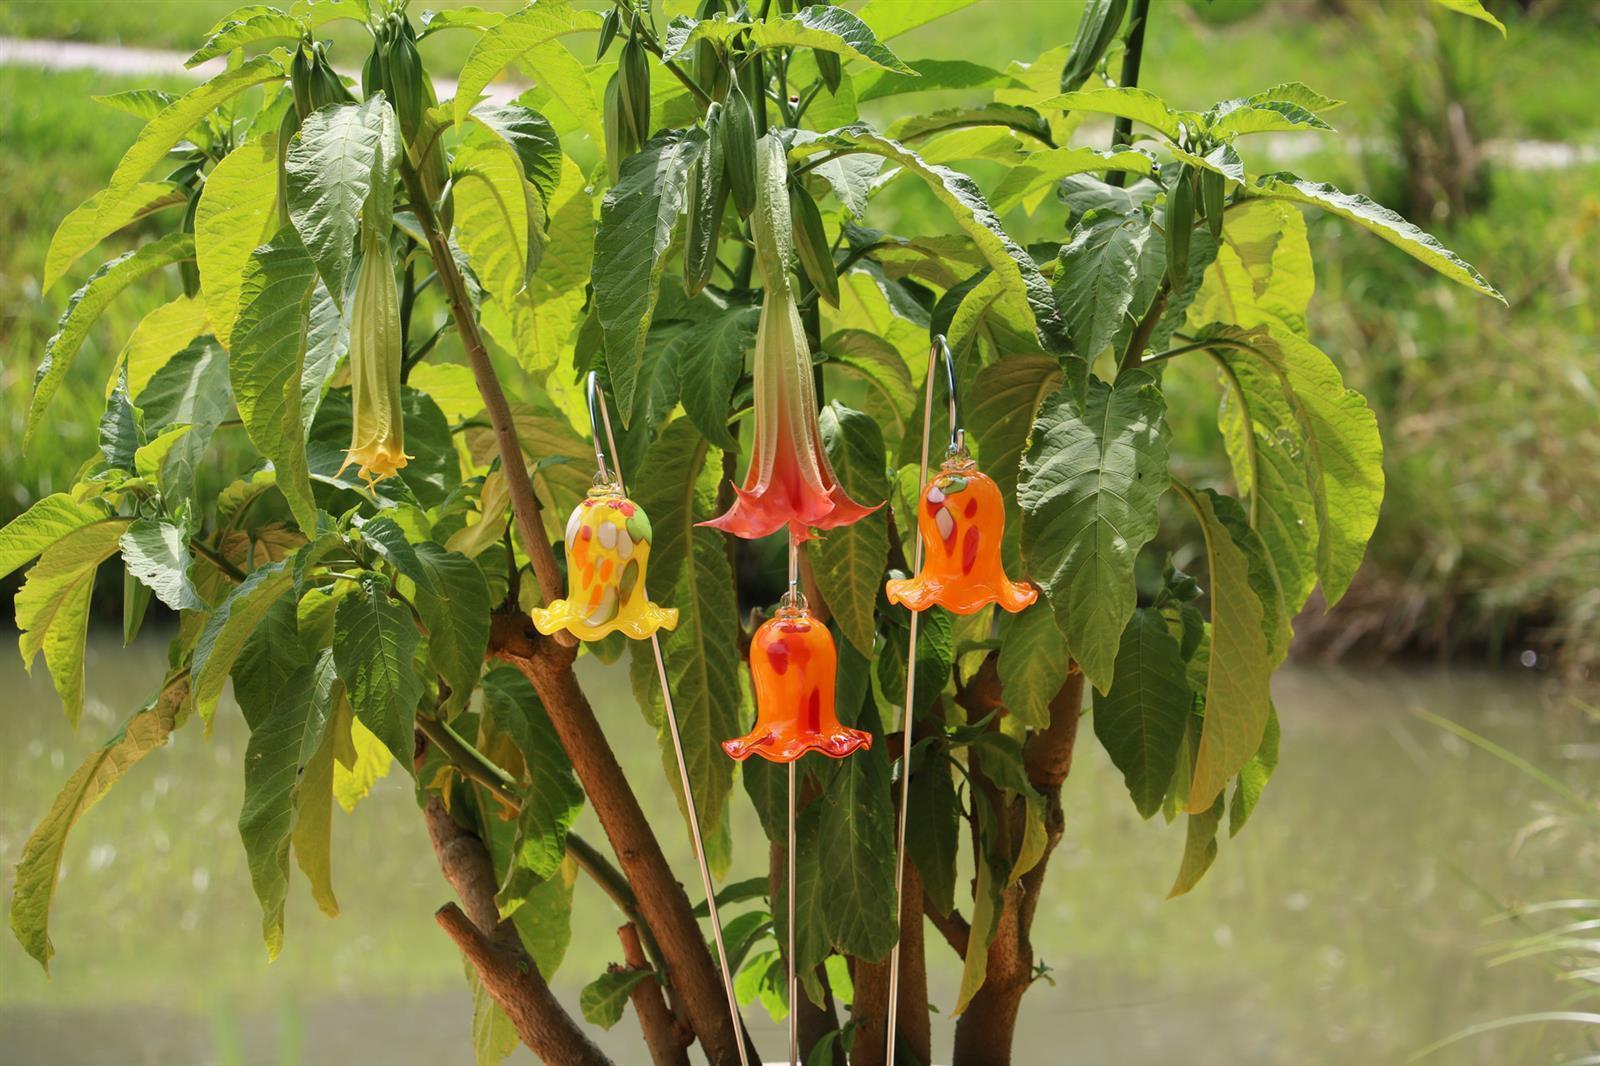 Garten-Miniatur-Glockenblume Gartenflair mit Stab 12 cm